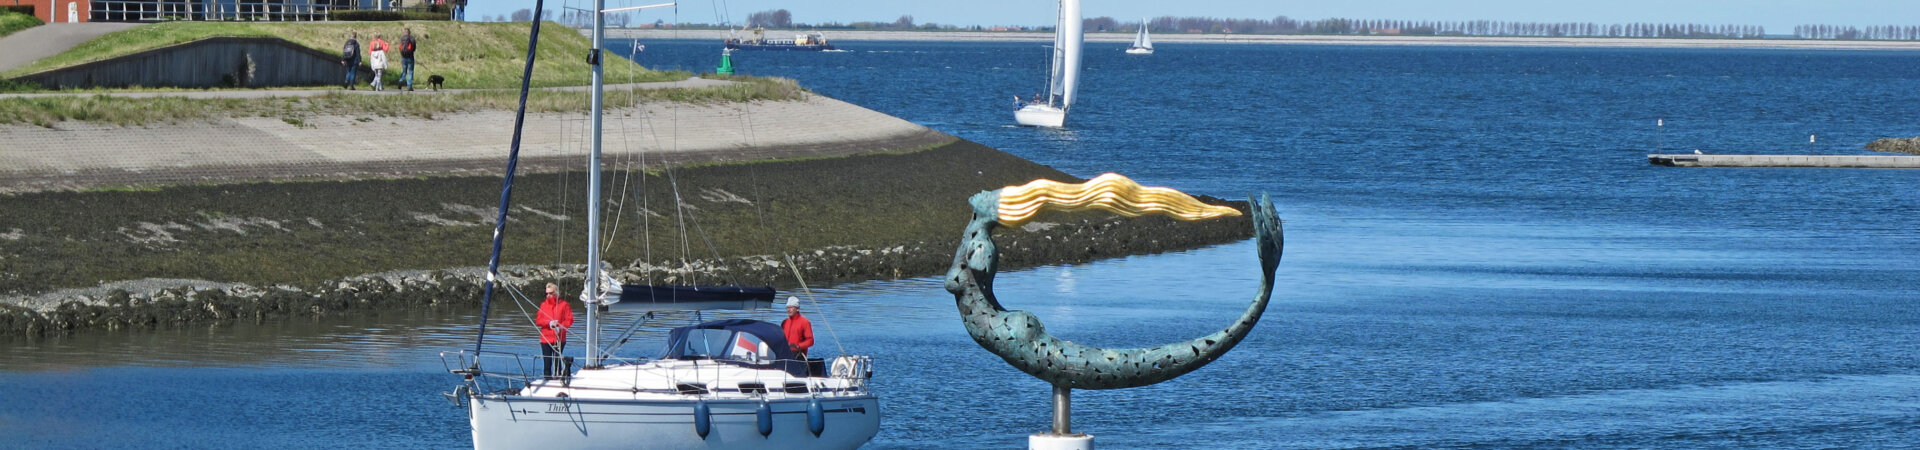 Zeilboot op de Oosterscheld die naar de jachthaven Wemeldinge vaart met kunstwerk de Zeemeermin